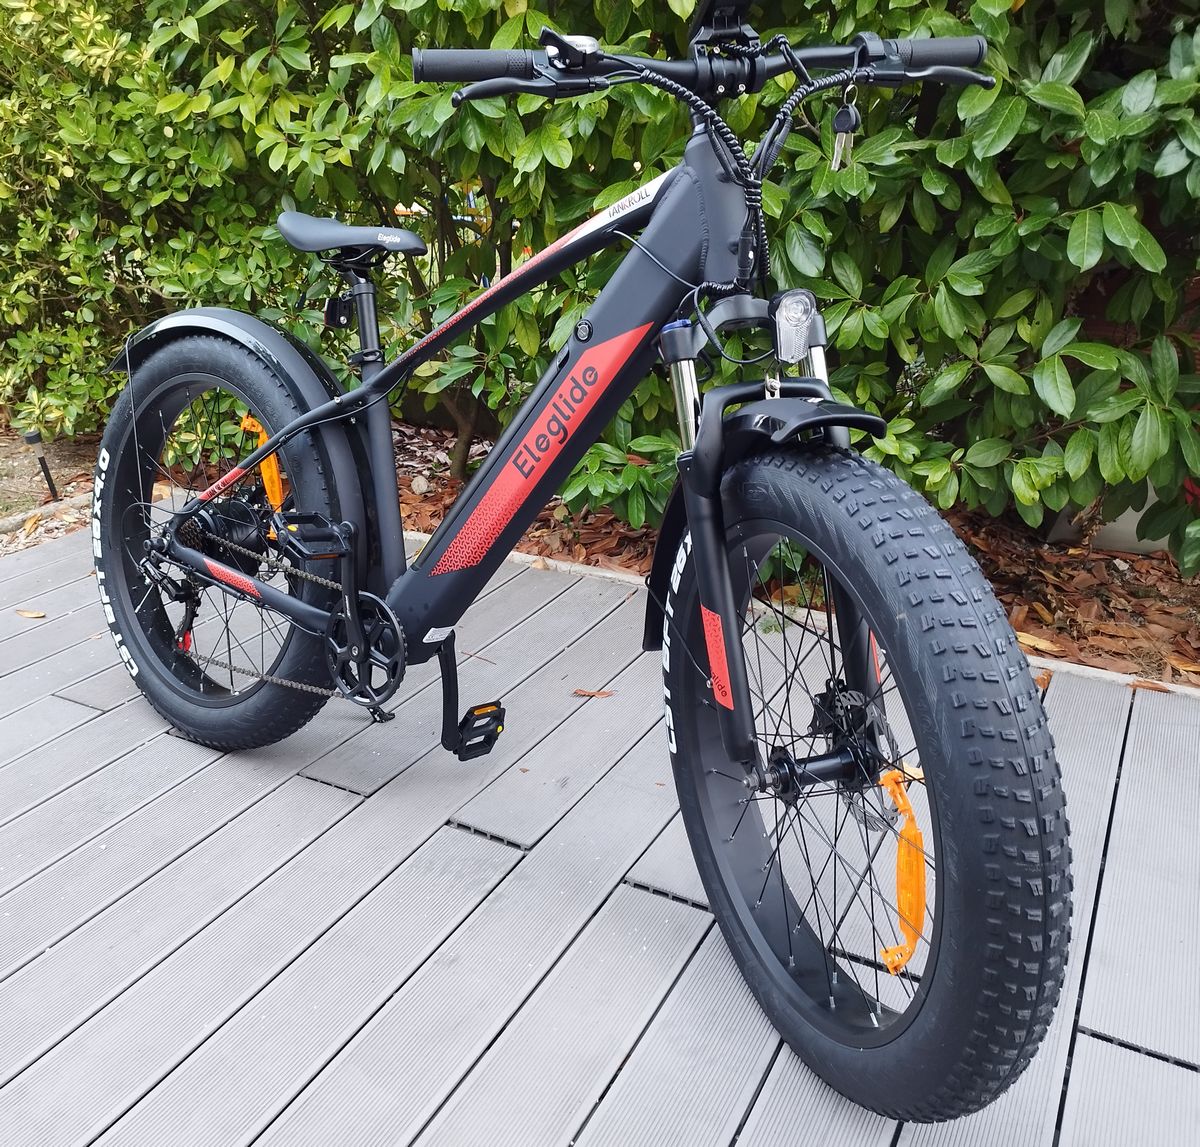 Bloc cadre de porte-vélo électrique suspendu (x2) – Etape Auto